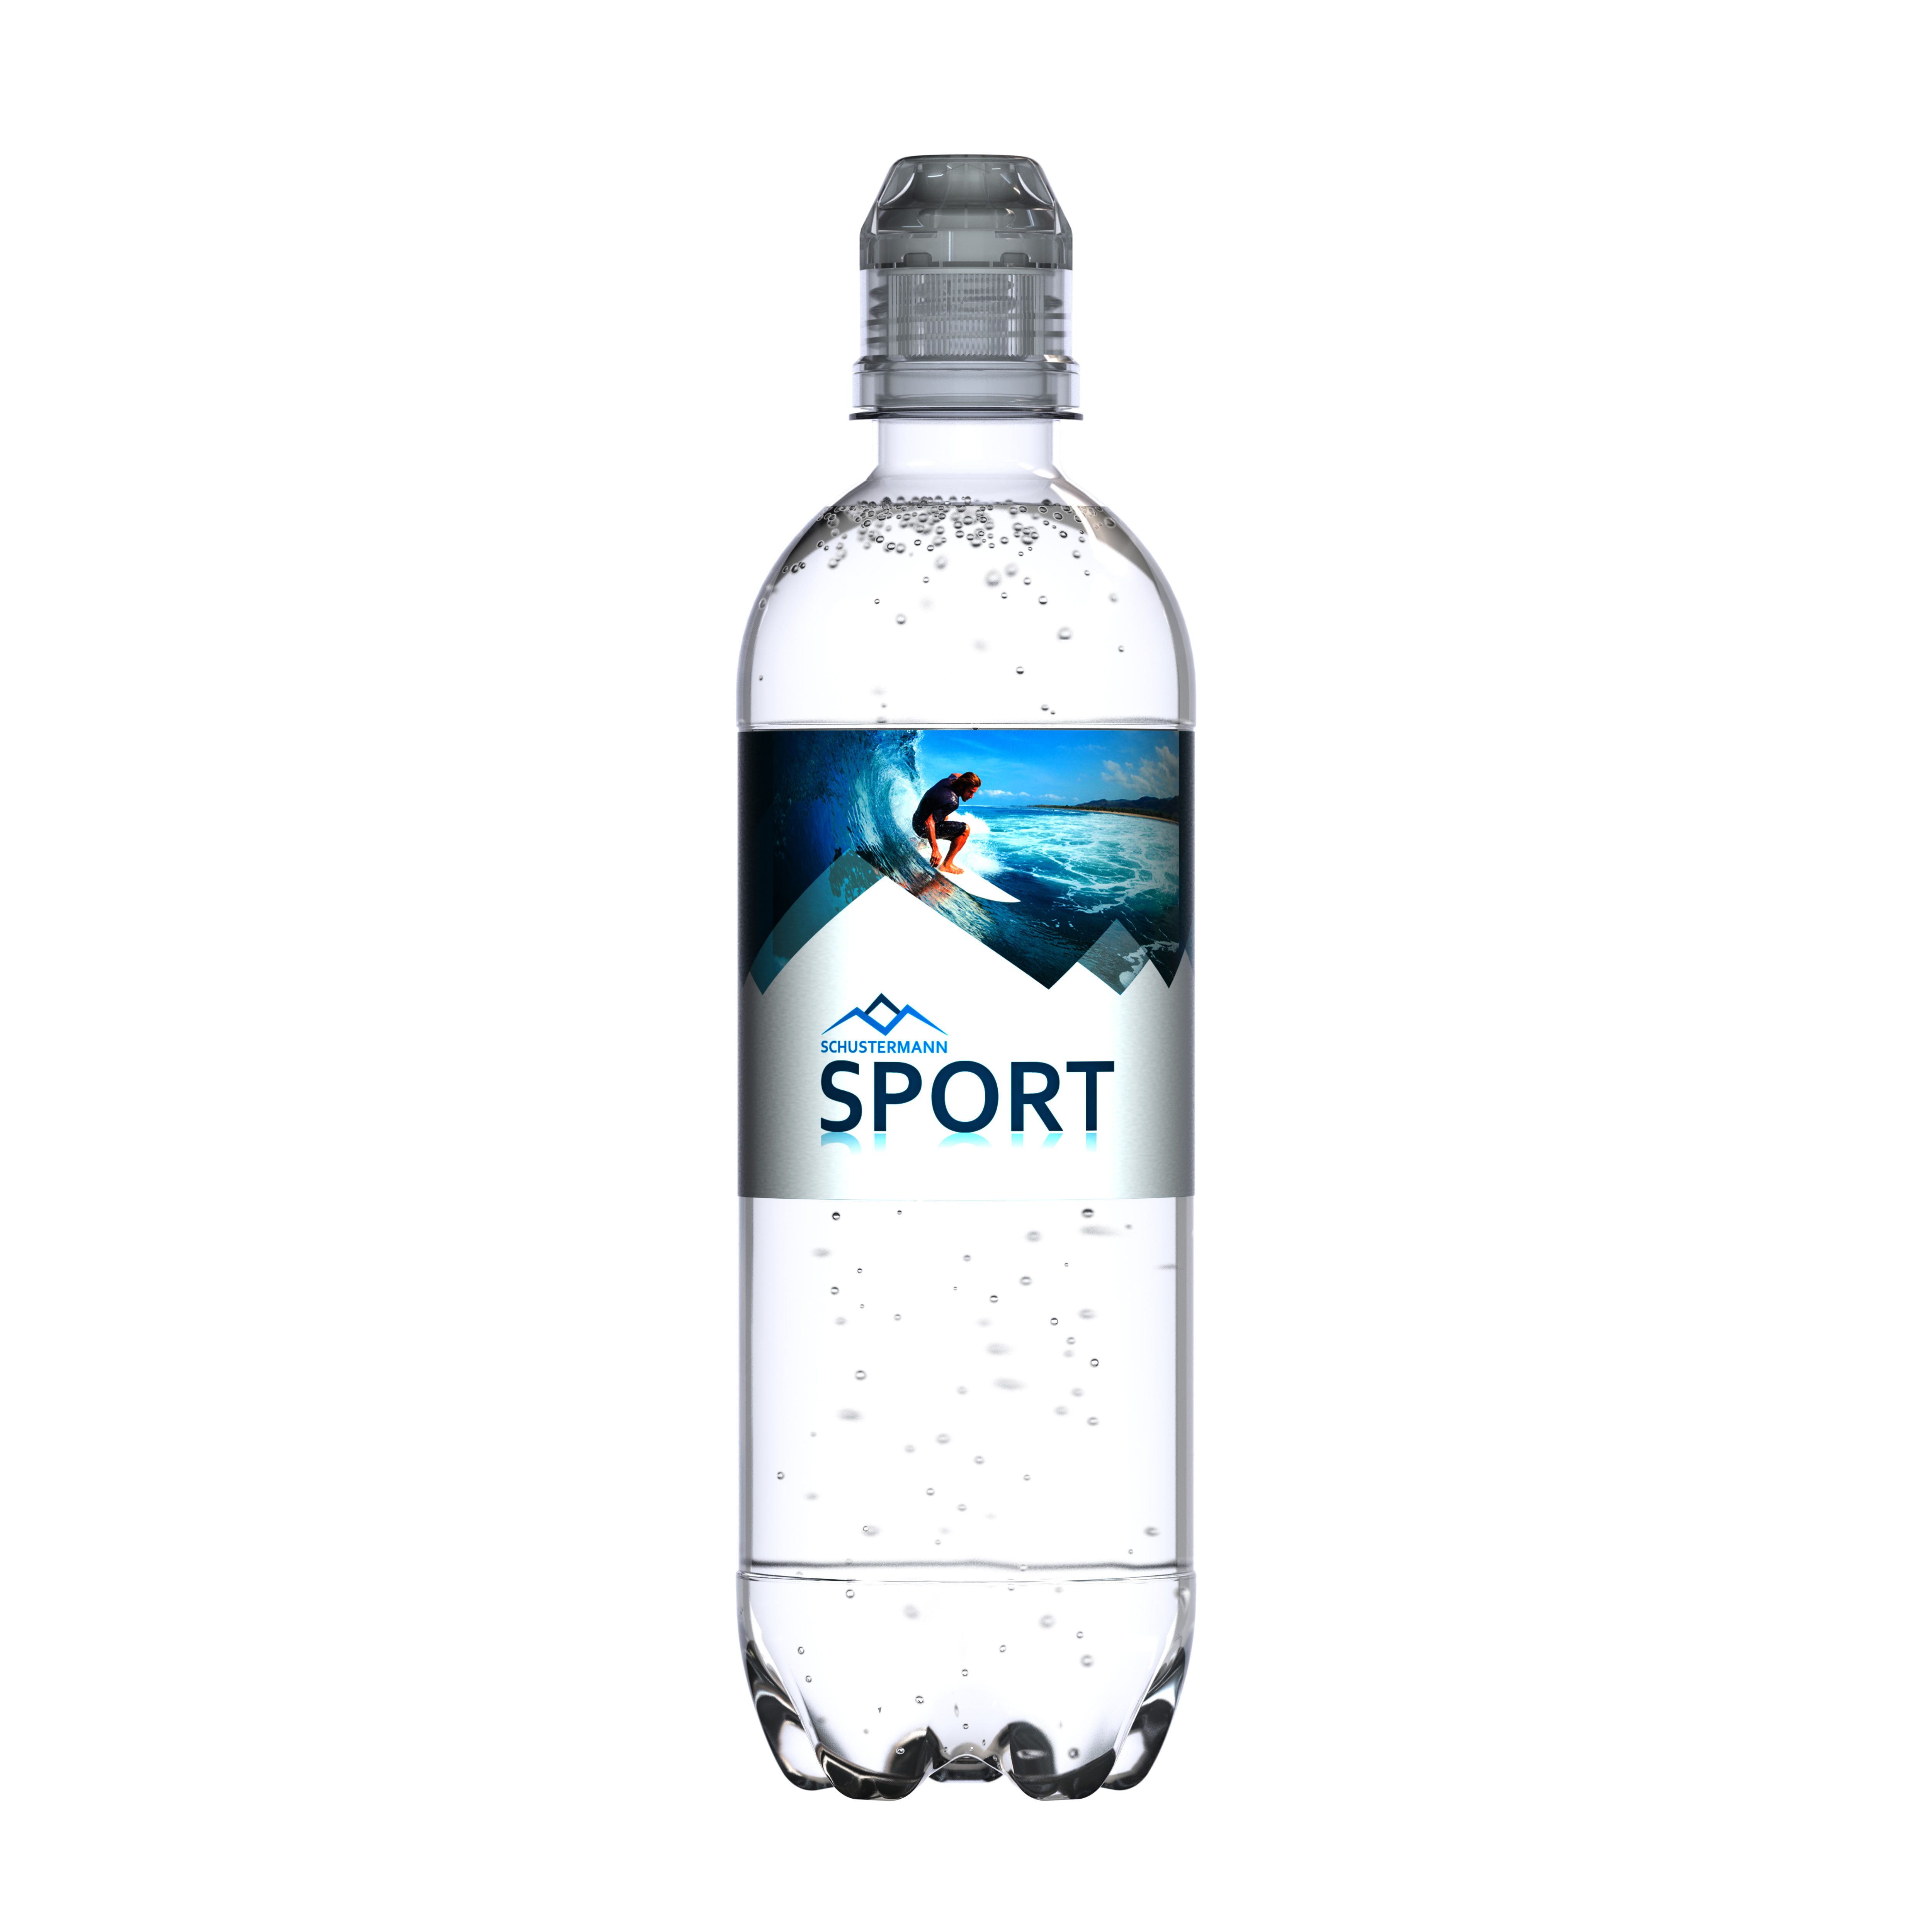 500 ml Quellwasser medium (Sportcap) - Smart Label